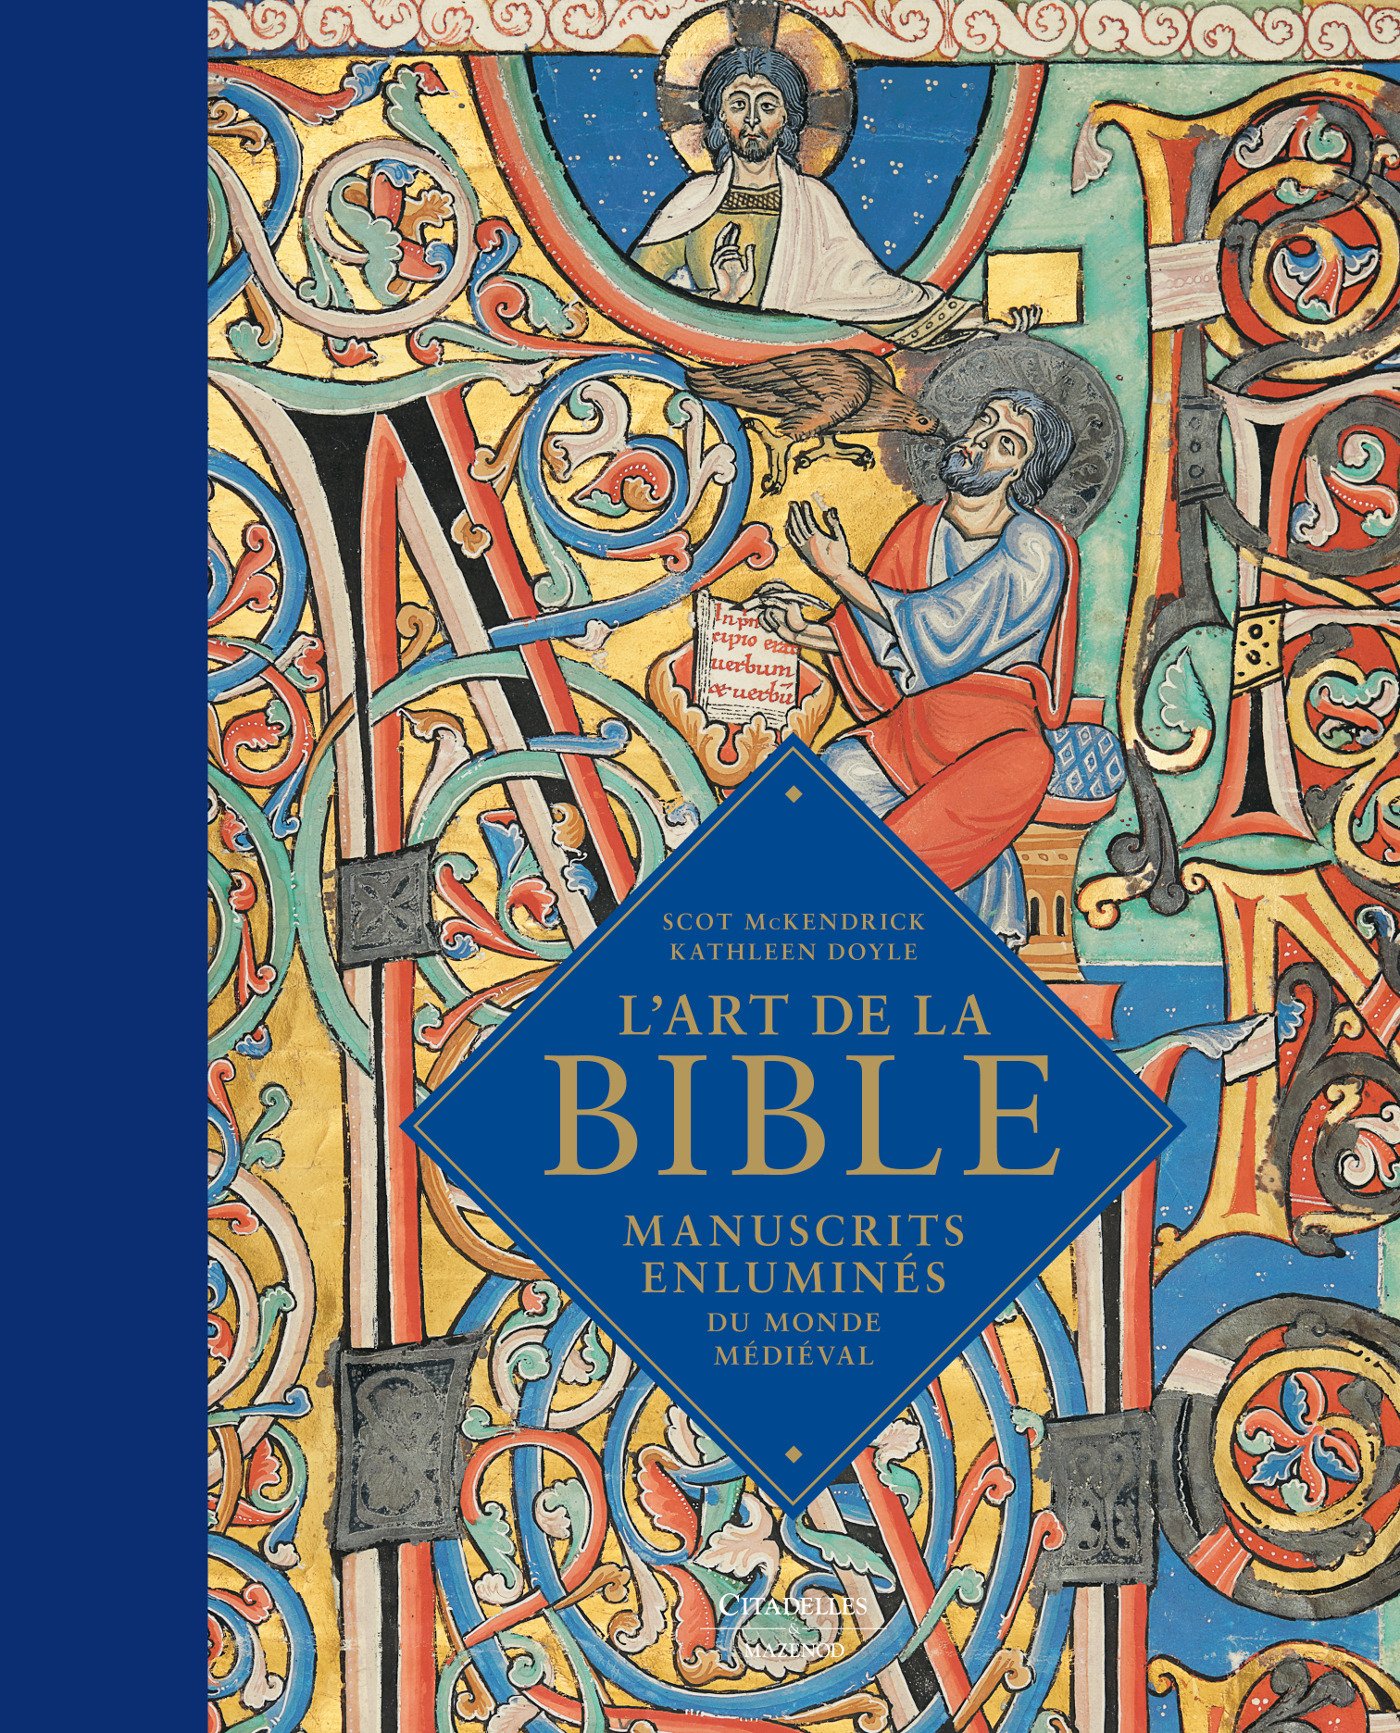 L'art de la Bible. Manuscrits enluminés du monde médiéval, 2017, 336 p., 225 ill. coul.